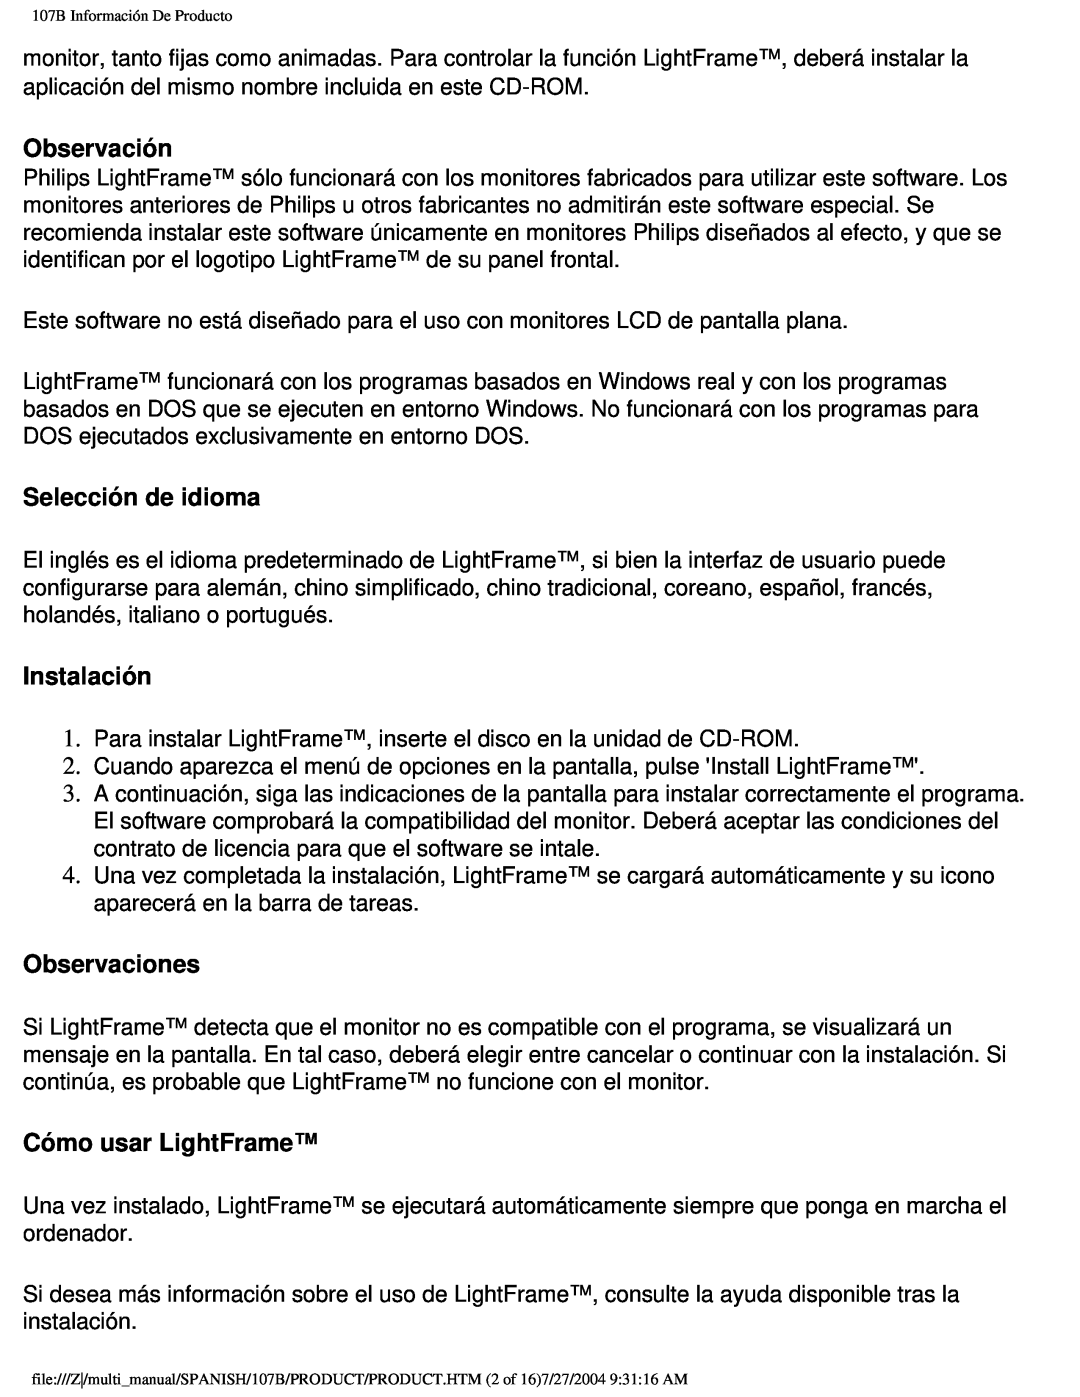 Philips 107B user manual Observación, Selección de idioma, Instalación, Observaciones, Cómo usar LightFrame 